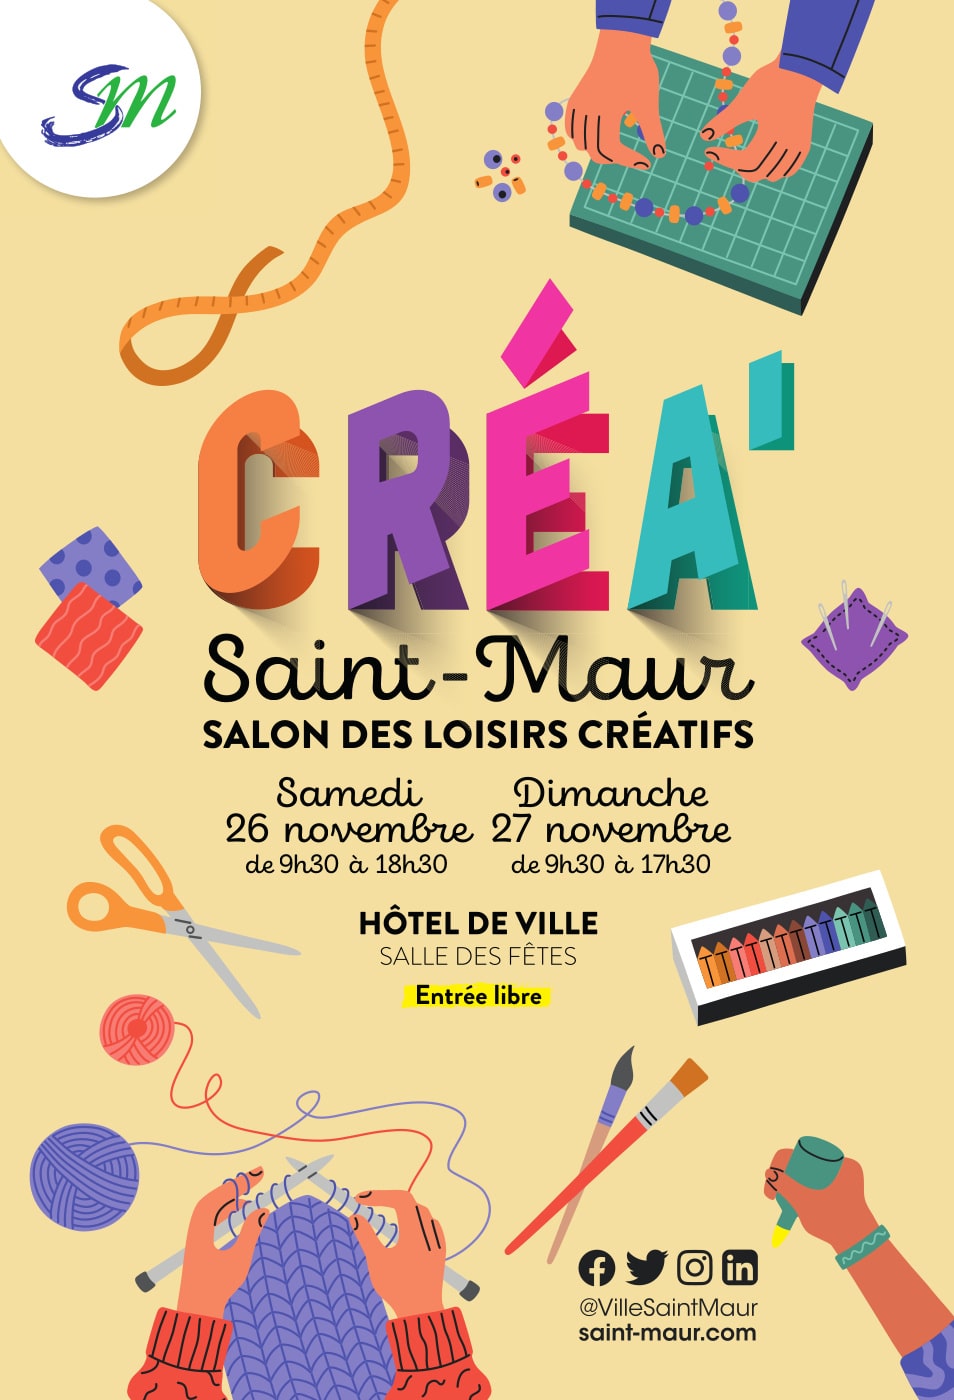 Crea Saint-Maur - salon de loisirs créatifs - les 19 et 20 novembre 2022